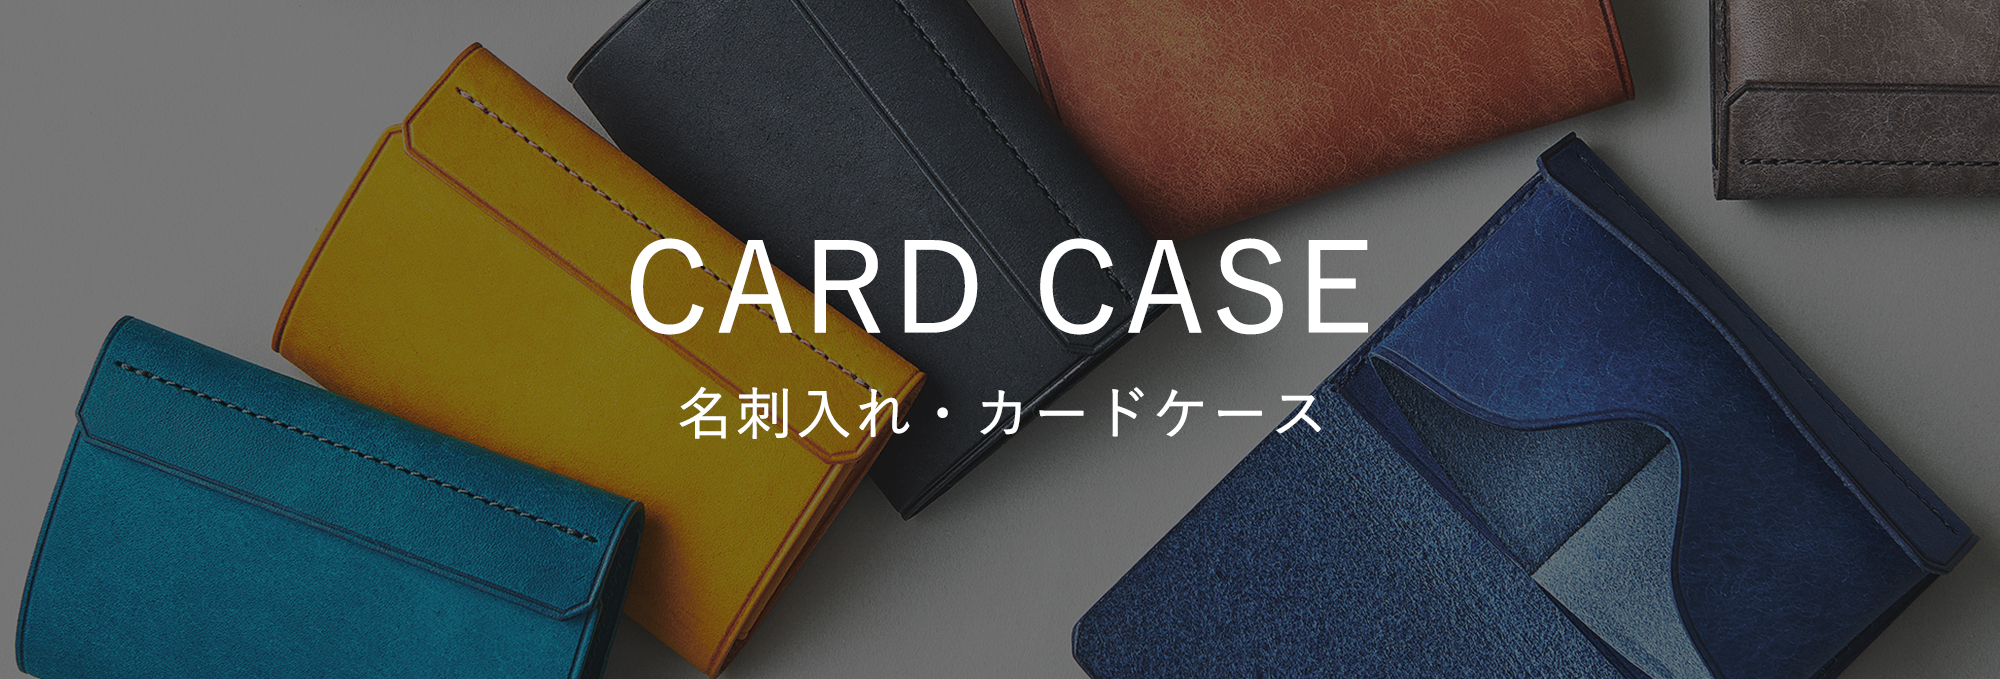 名刺入れ・カードケース